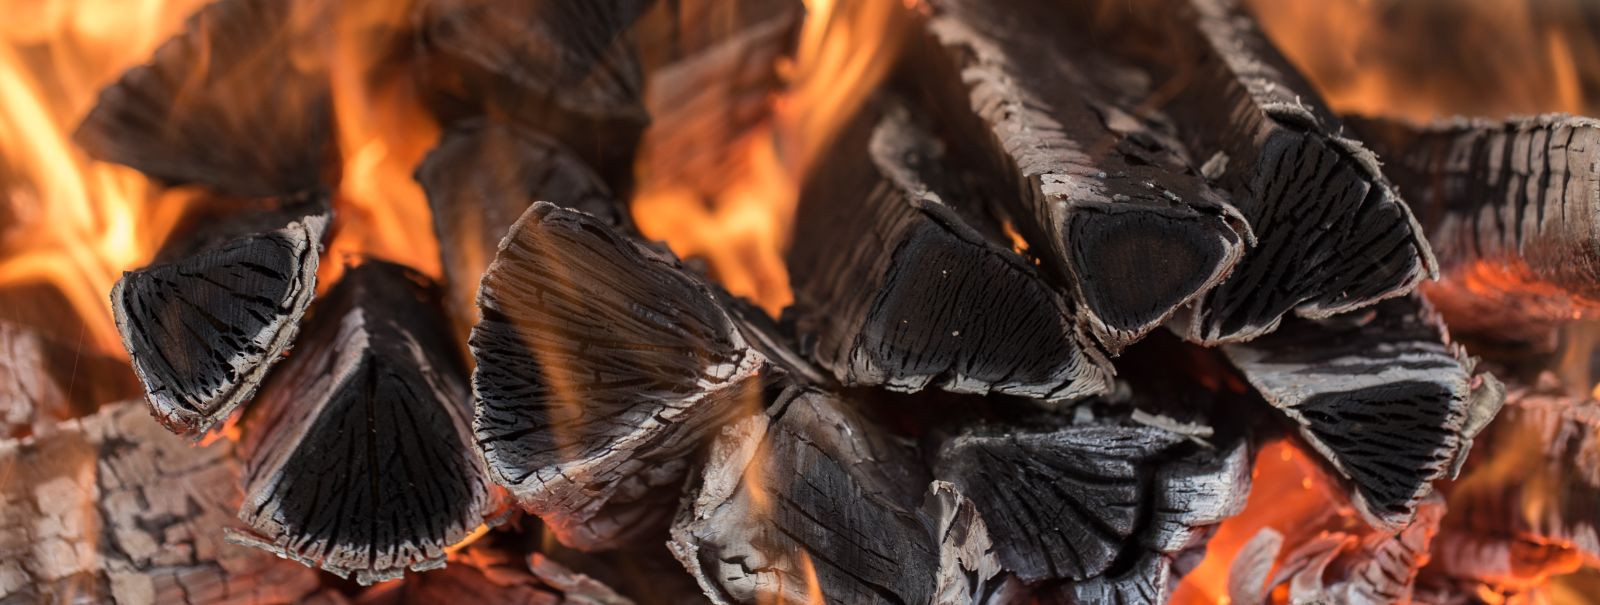 Kodune soojus ja hubasus algab tulekoldest, kuid tulekolde jaoks vajaliku küttepuude tuppavedu võib olla tüütu ülesanne. HOLZ OÜ on mõistab seda ning loonud vas